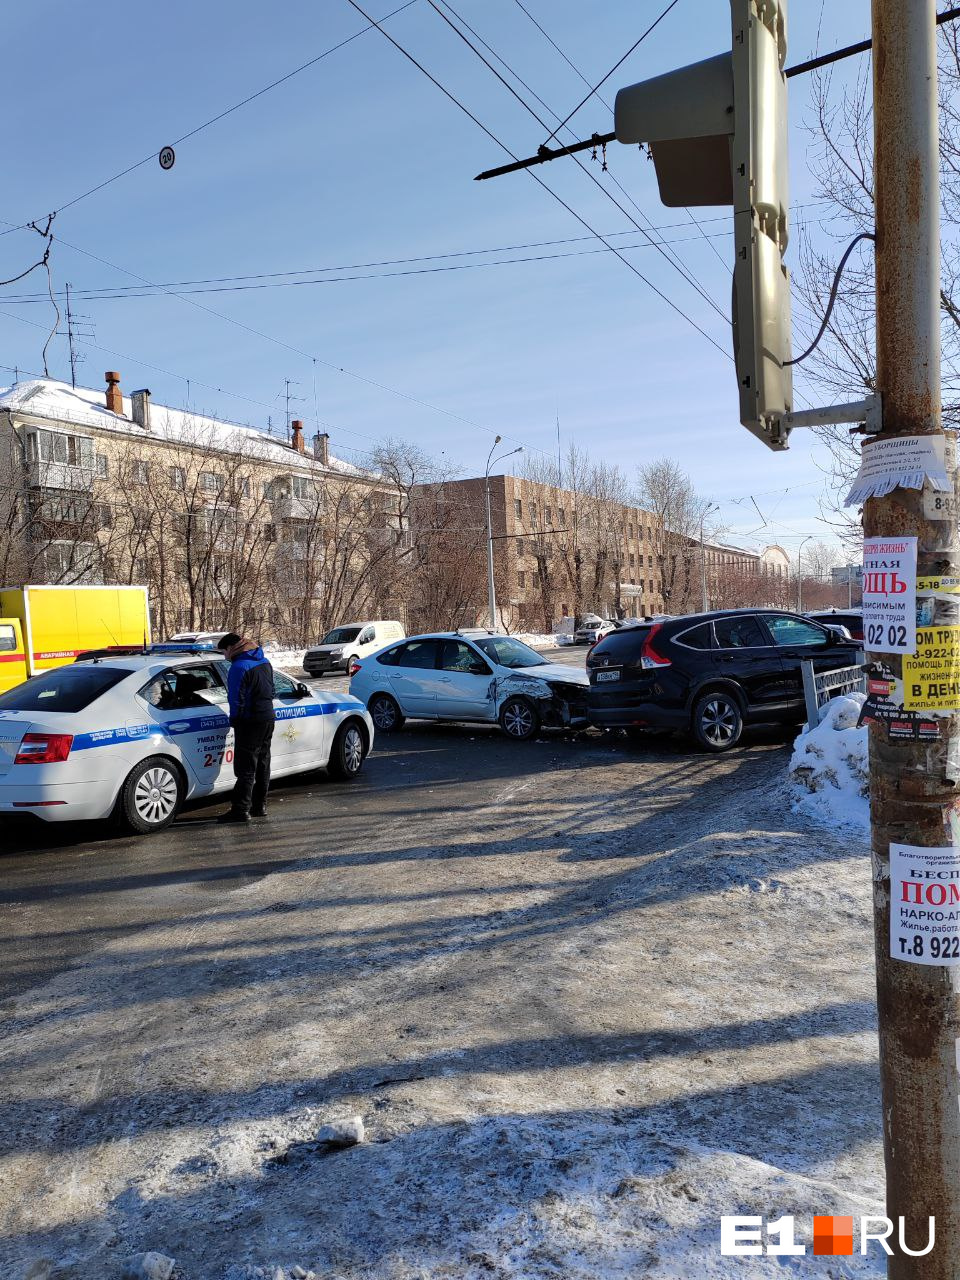 В Екатеринбурге лихач на «Ладе» устроил массовое ДТП. Он протаранил три легковушки: видео